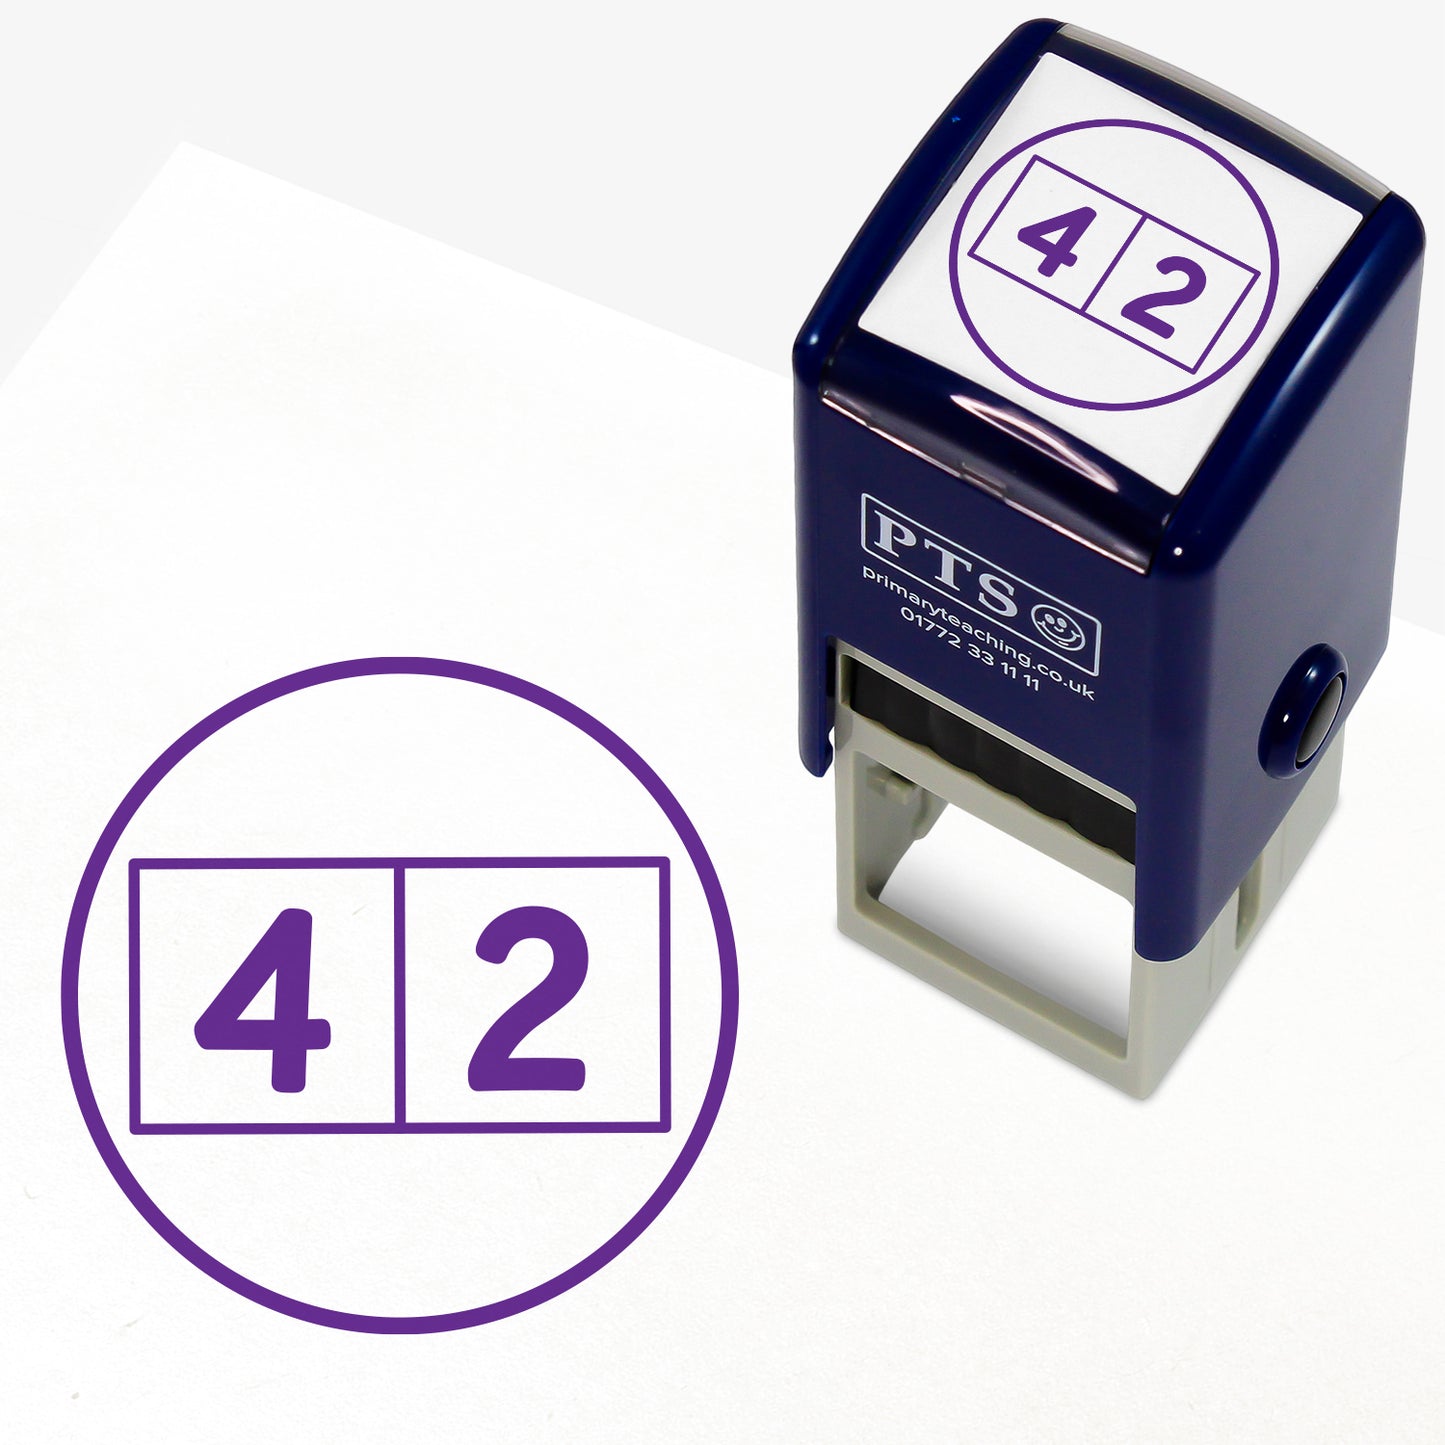 Write One Digit Per Square Stamper - 25mm